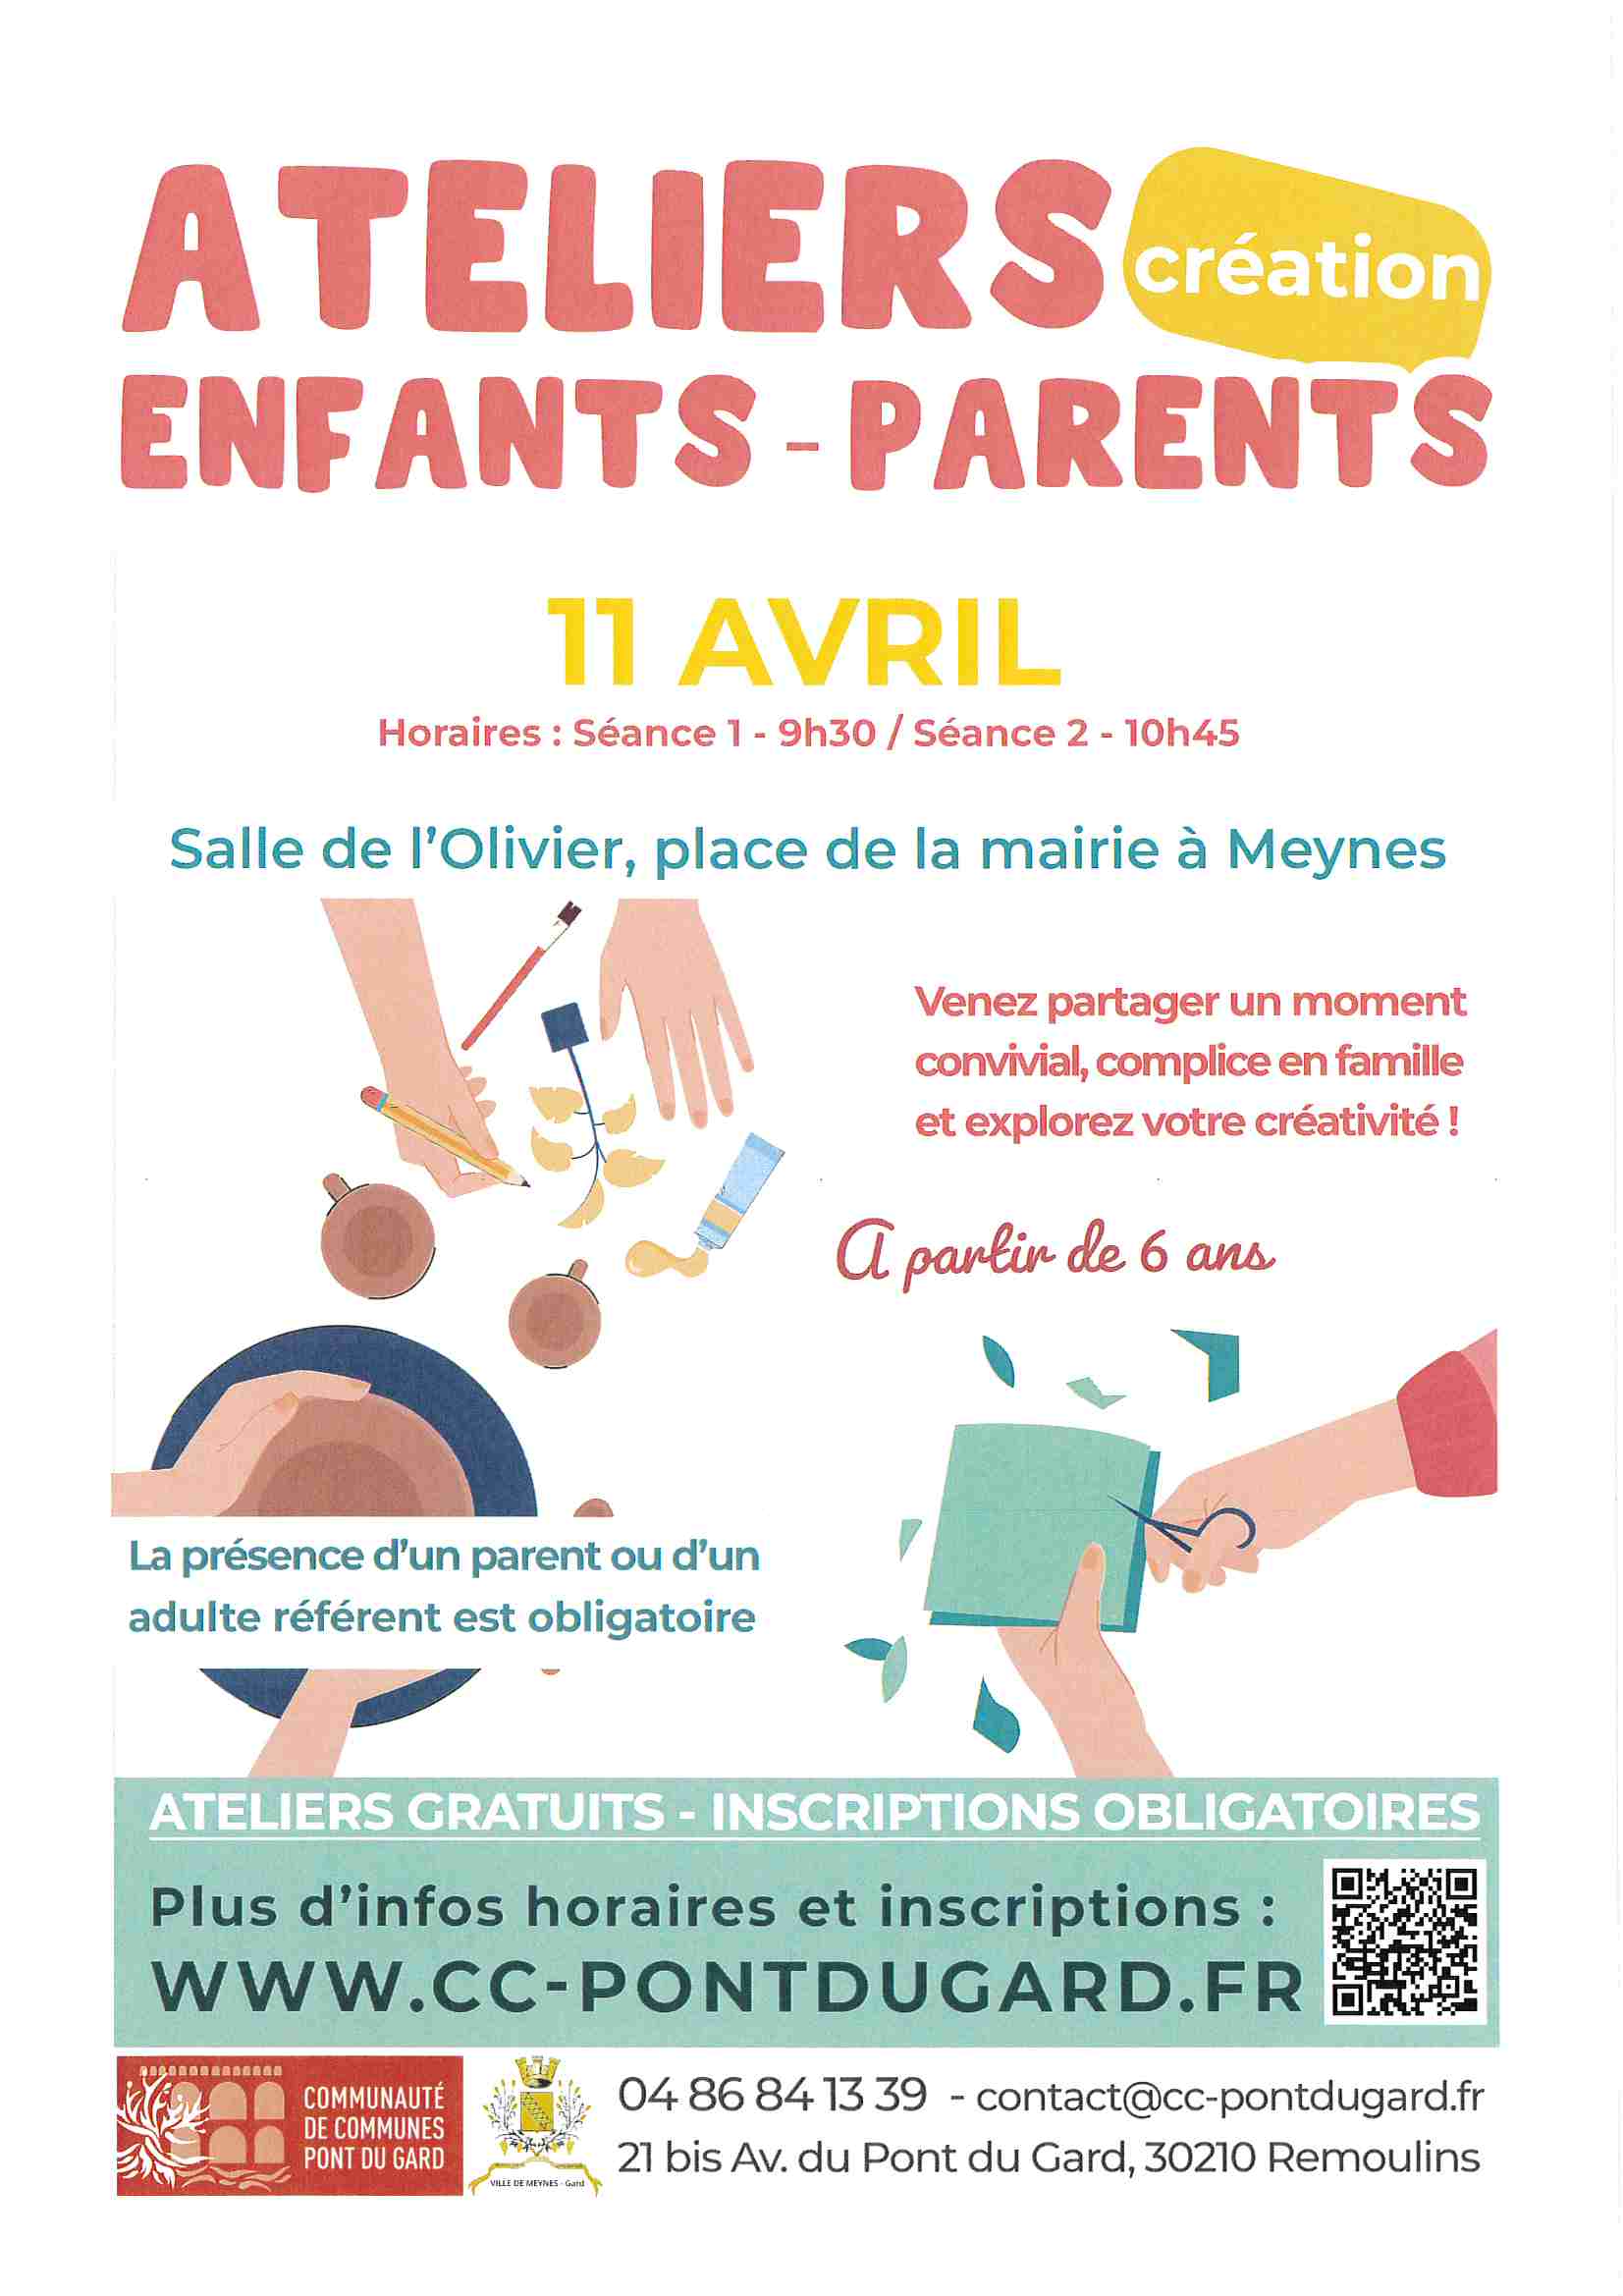 PARENTALITE : pour rappel Ateliers création Enfants - Parents le 11 avril à MEYNES à 9h30 et à 10h45